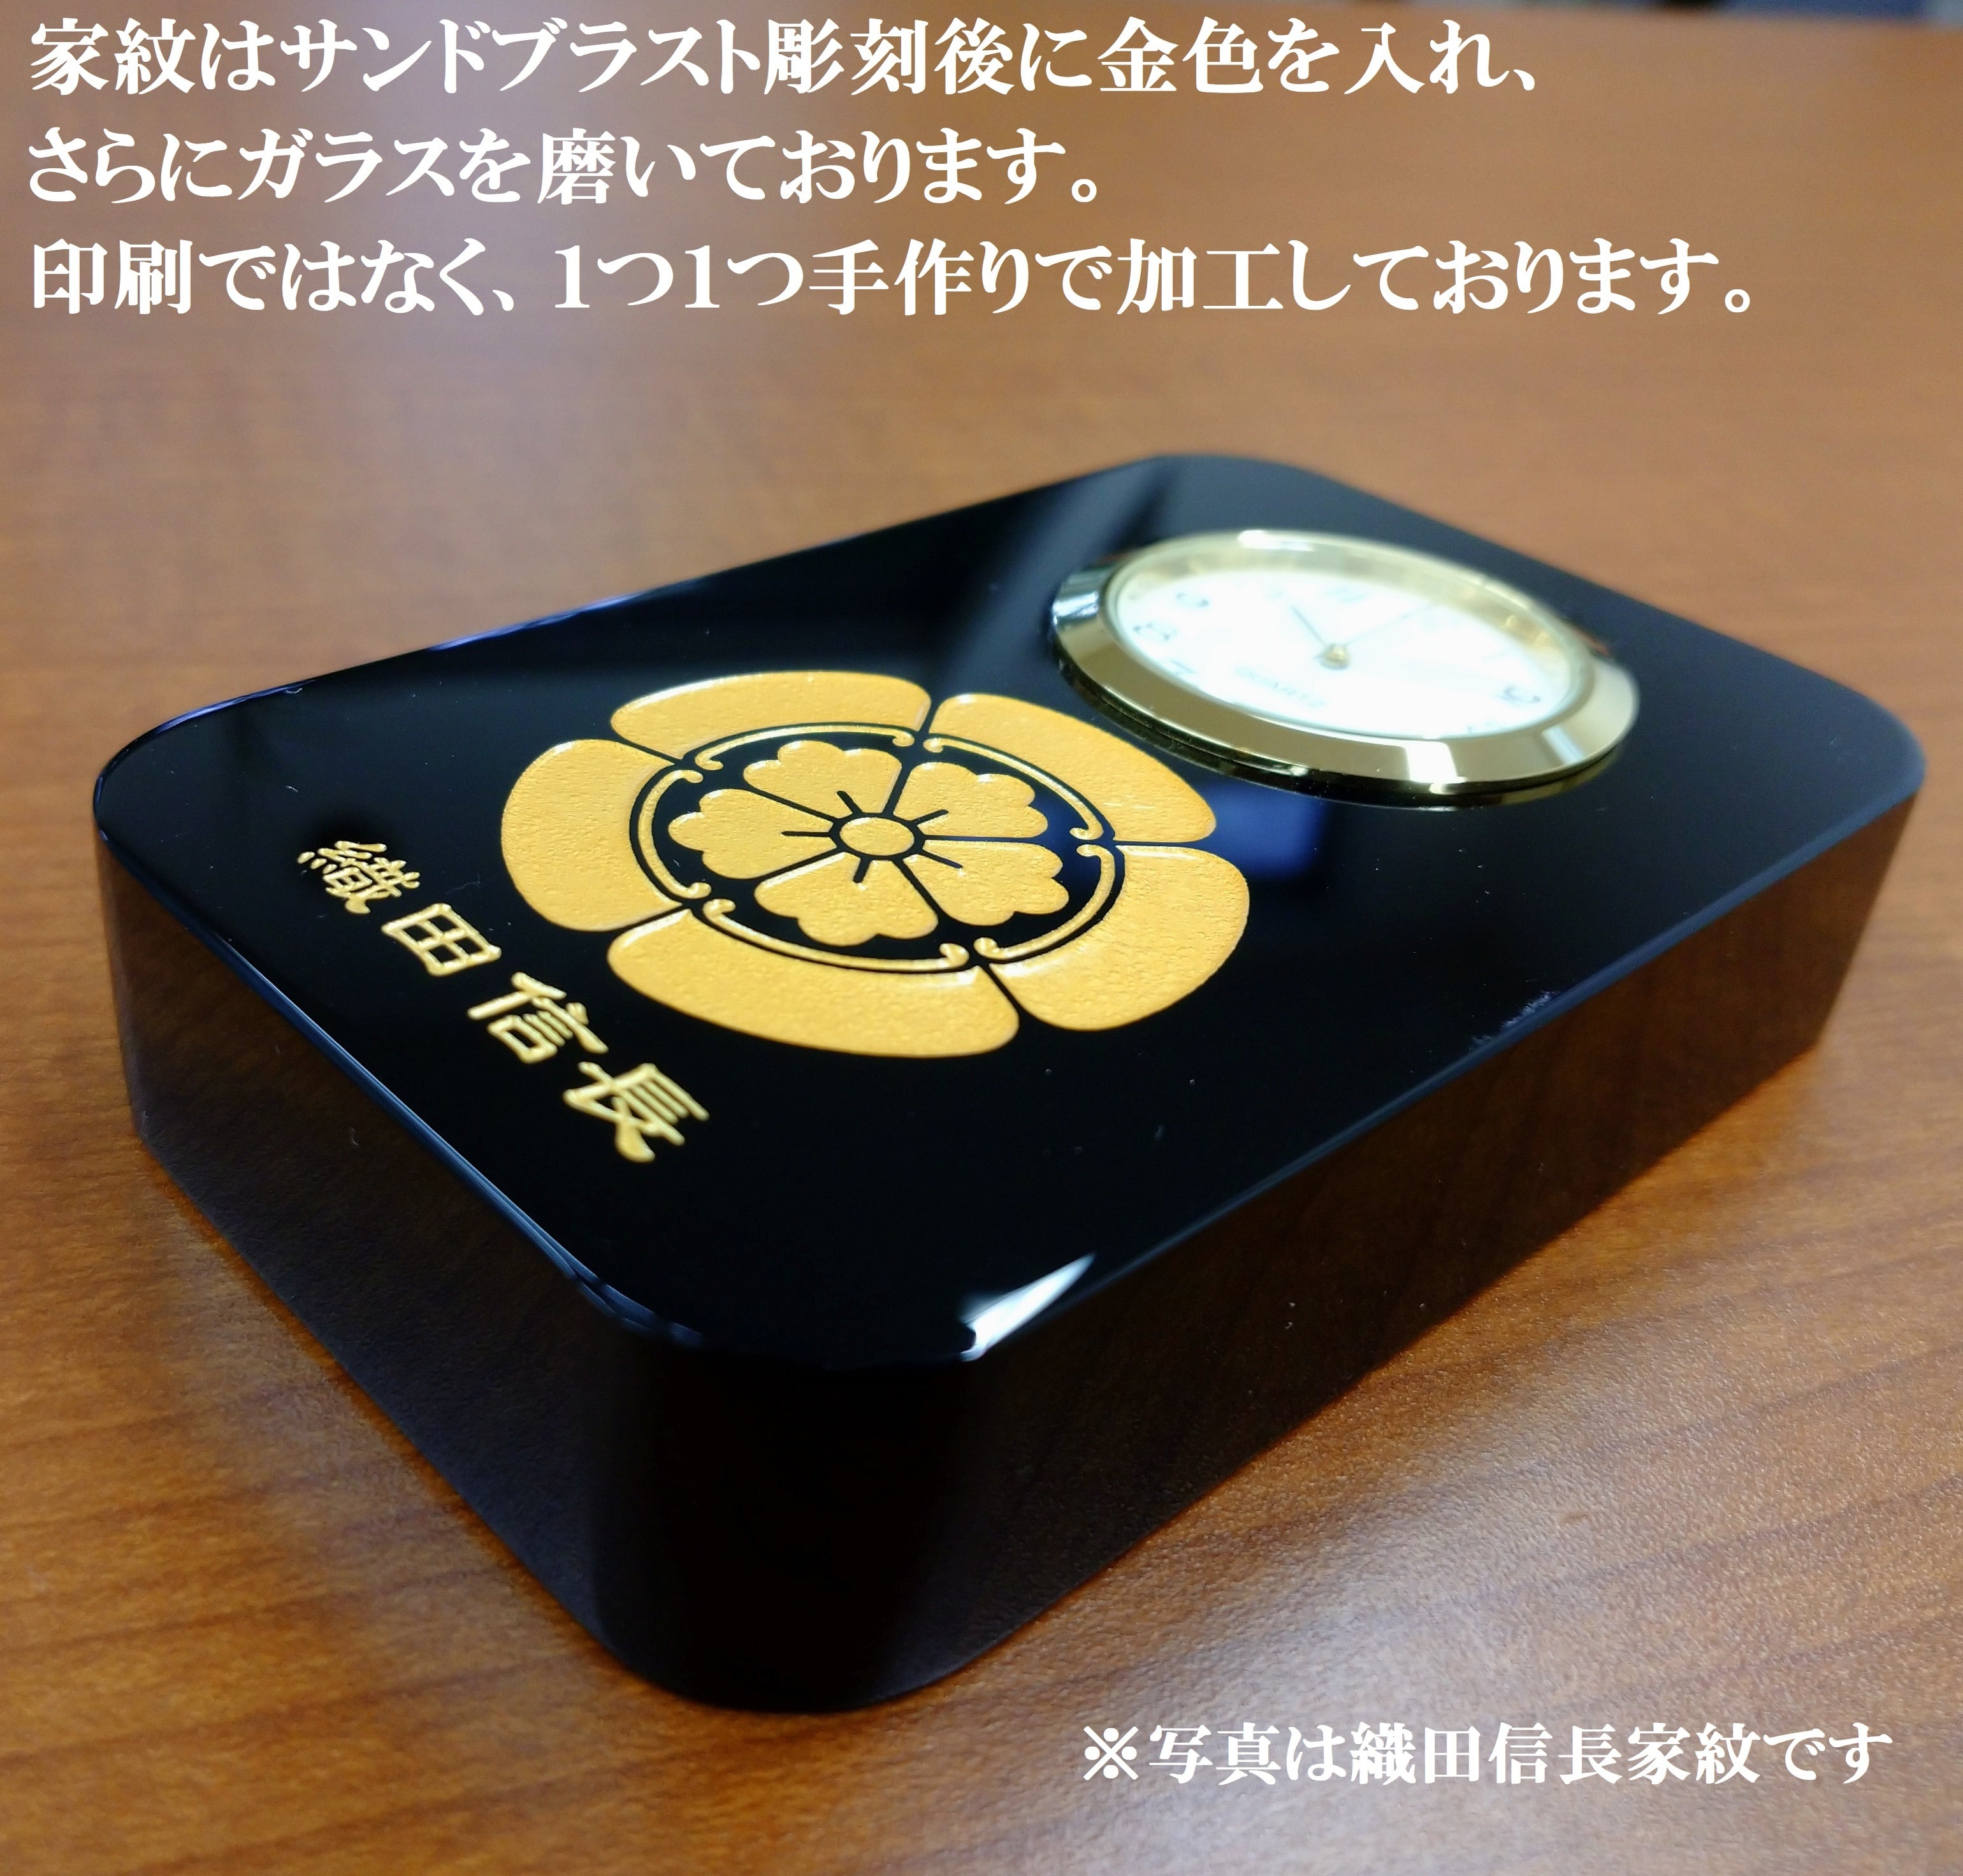 【限定販売】石田三成 家紋　匠の黒硝子時計